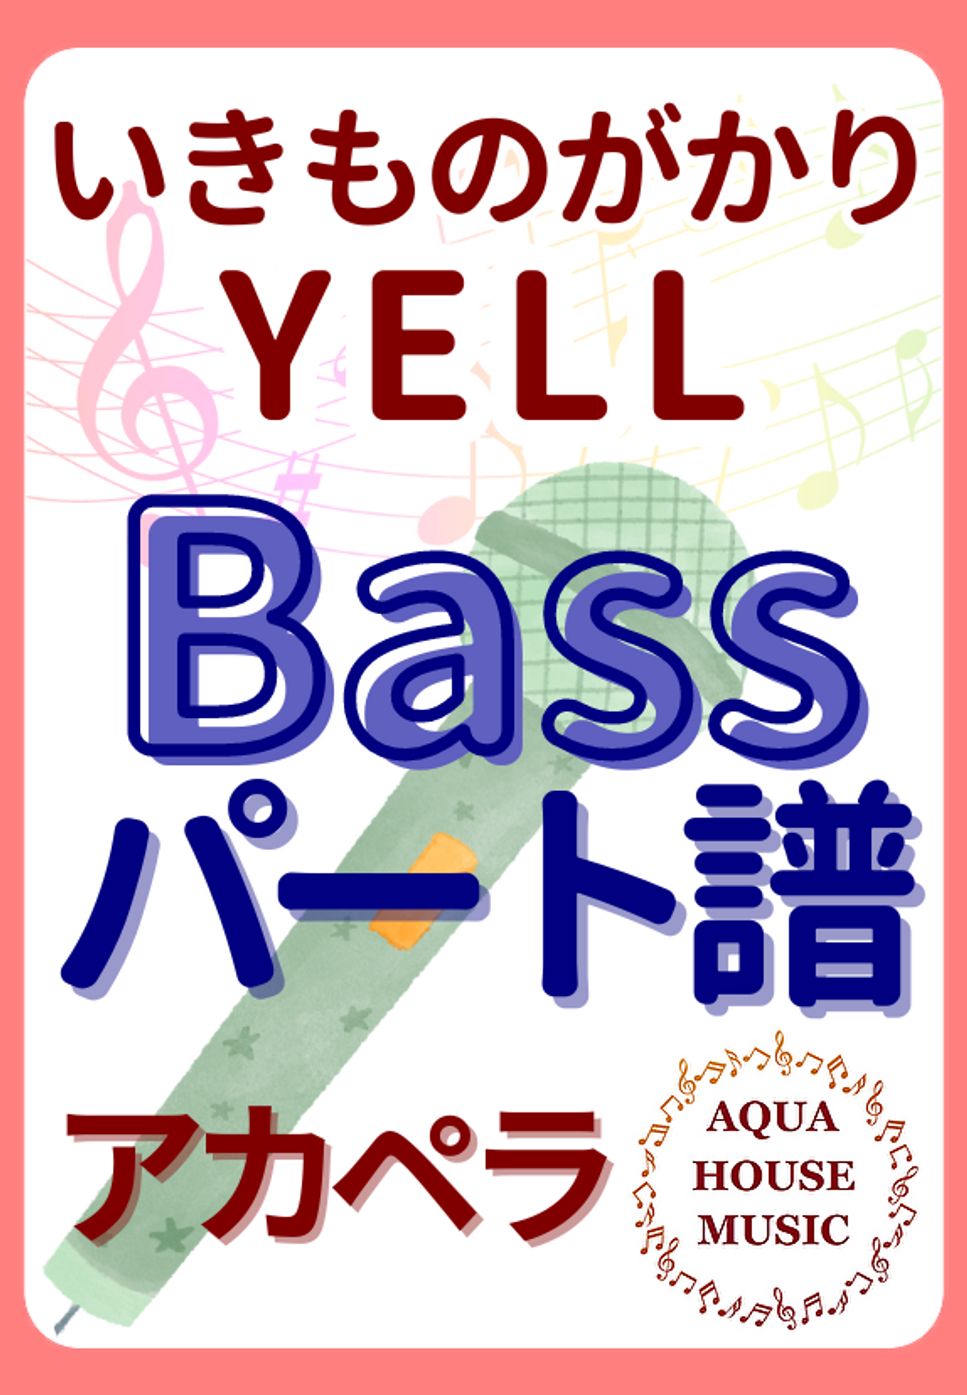 いきものがかり - YELL (アカペラ楽譜♪Bassパート譜) by 飯田 亜紗子